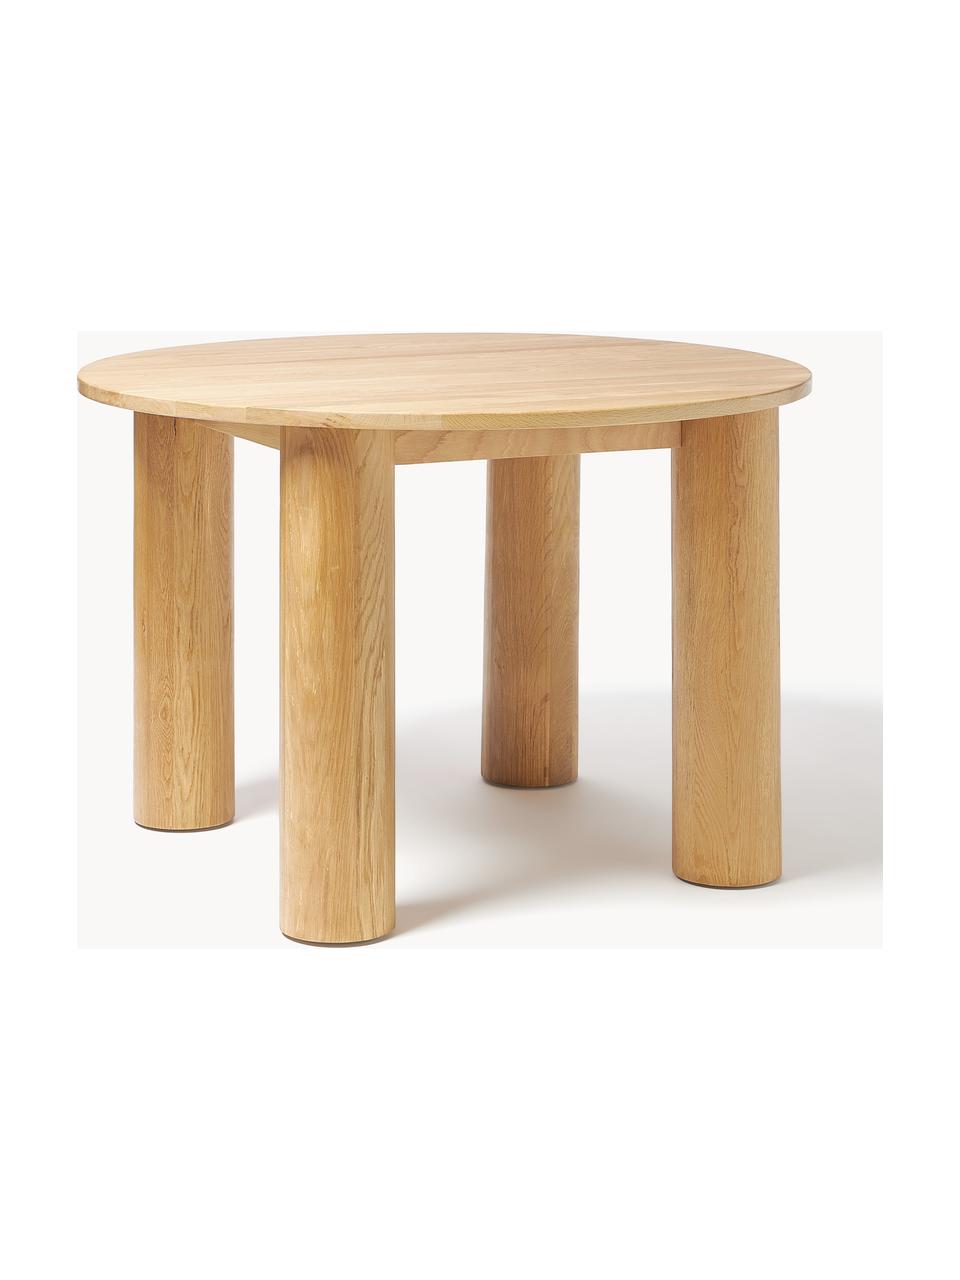 Kulatý jídelní stůl z dubového dřeva Ohana, Ø 120 cm, Masivní dubové dřevo, olejované

Tento produkt je vyroben z udržitelných zdrojů dřeva s certifikací FSC®., Dubové dřevo, světle olejované, Ø 120 cm